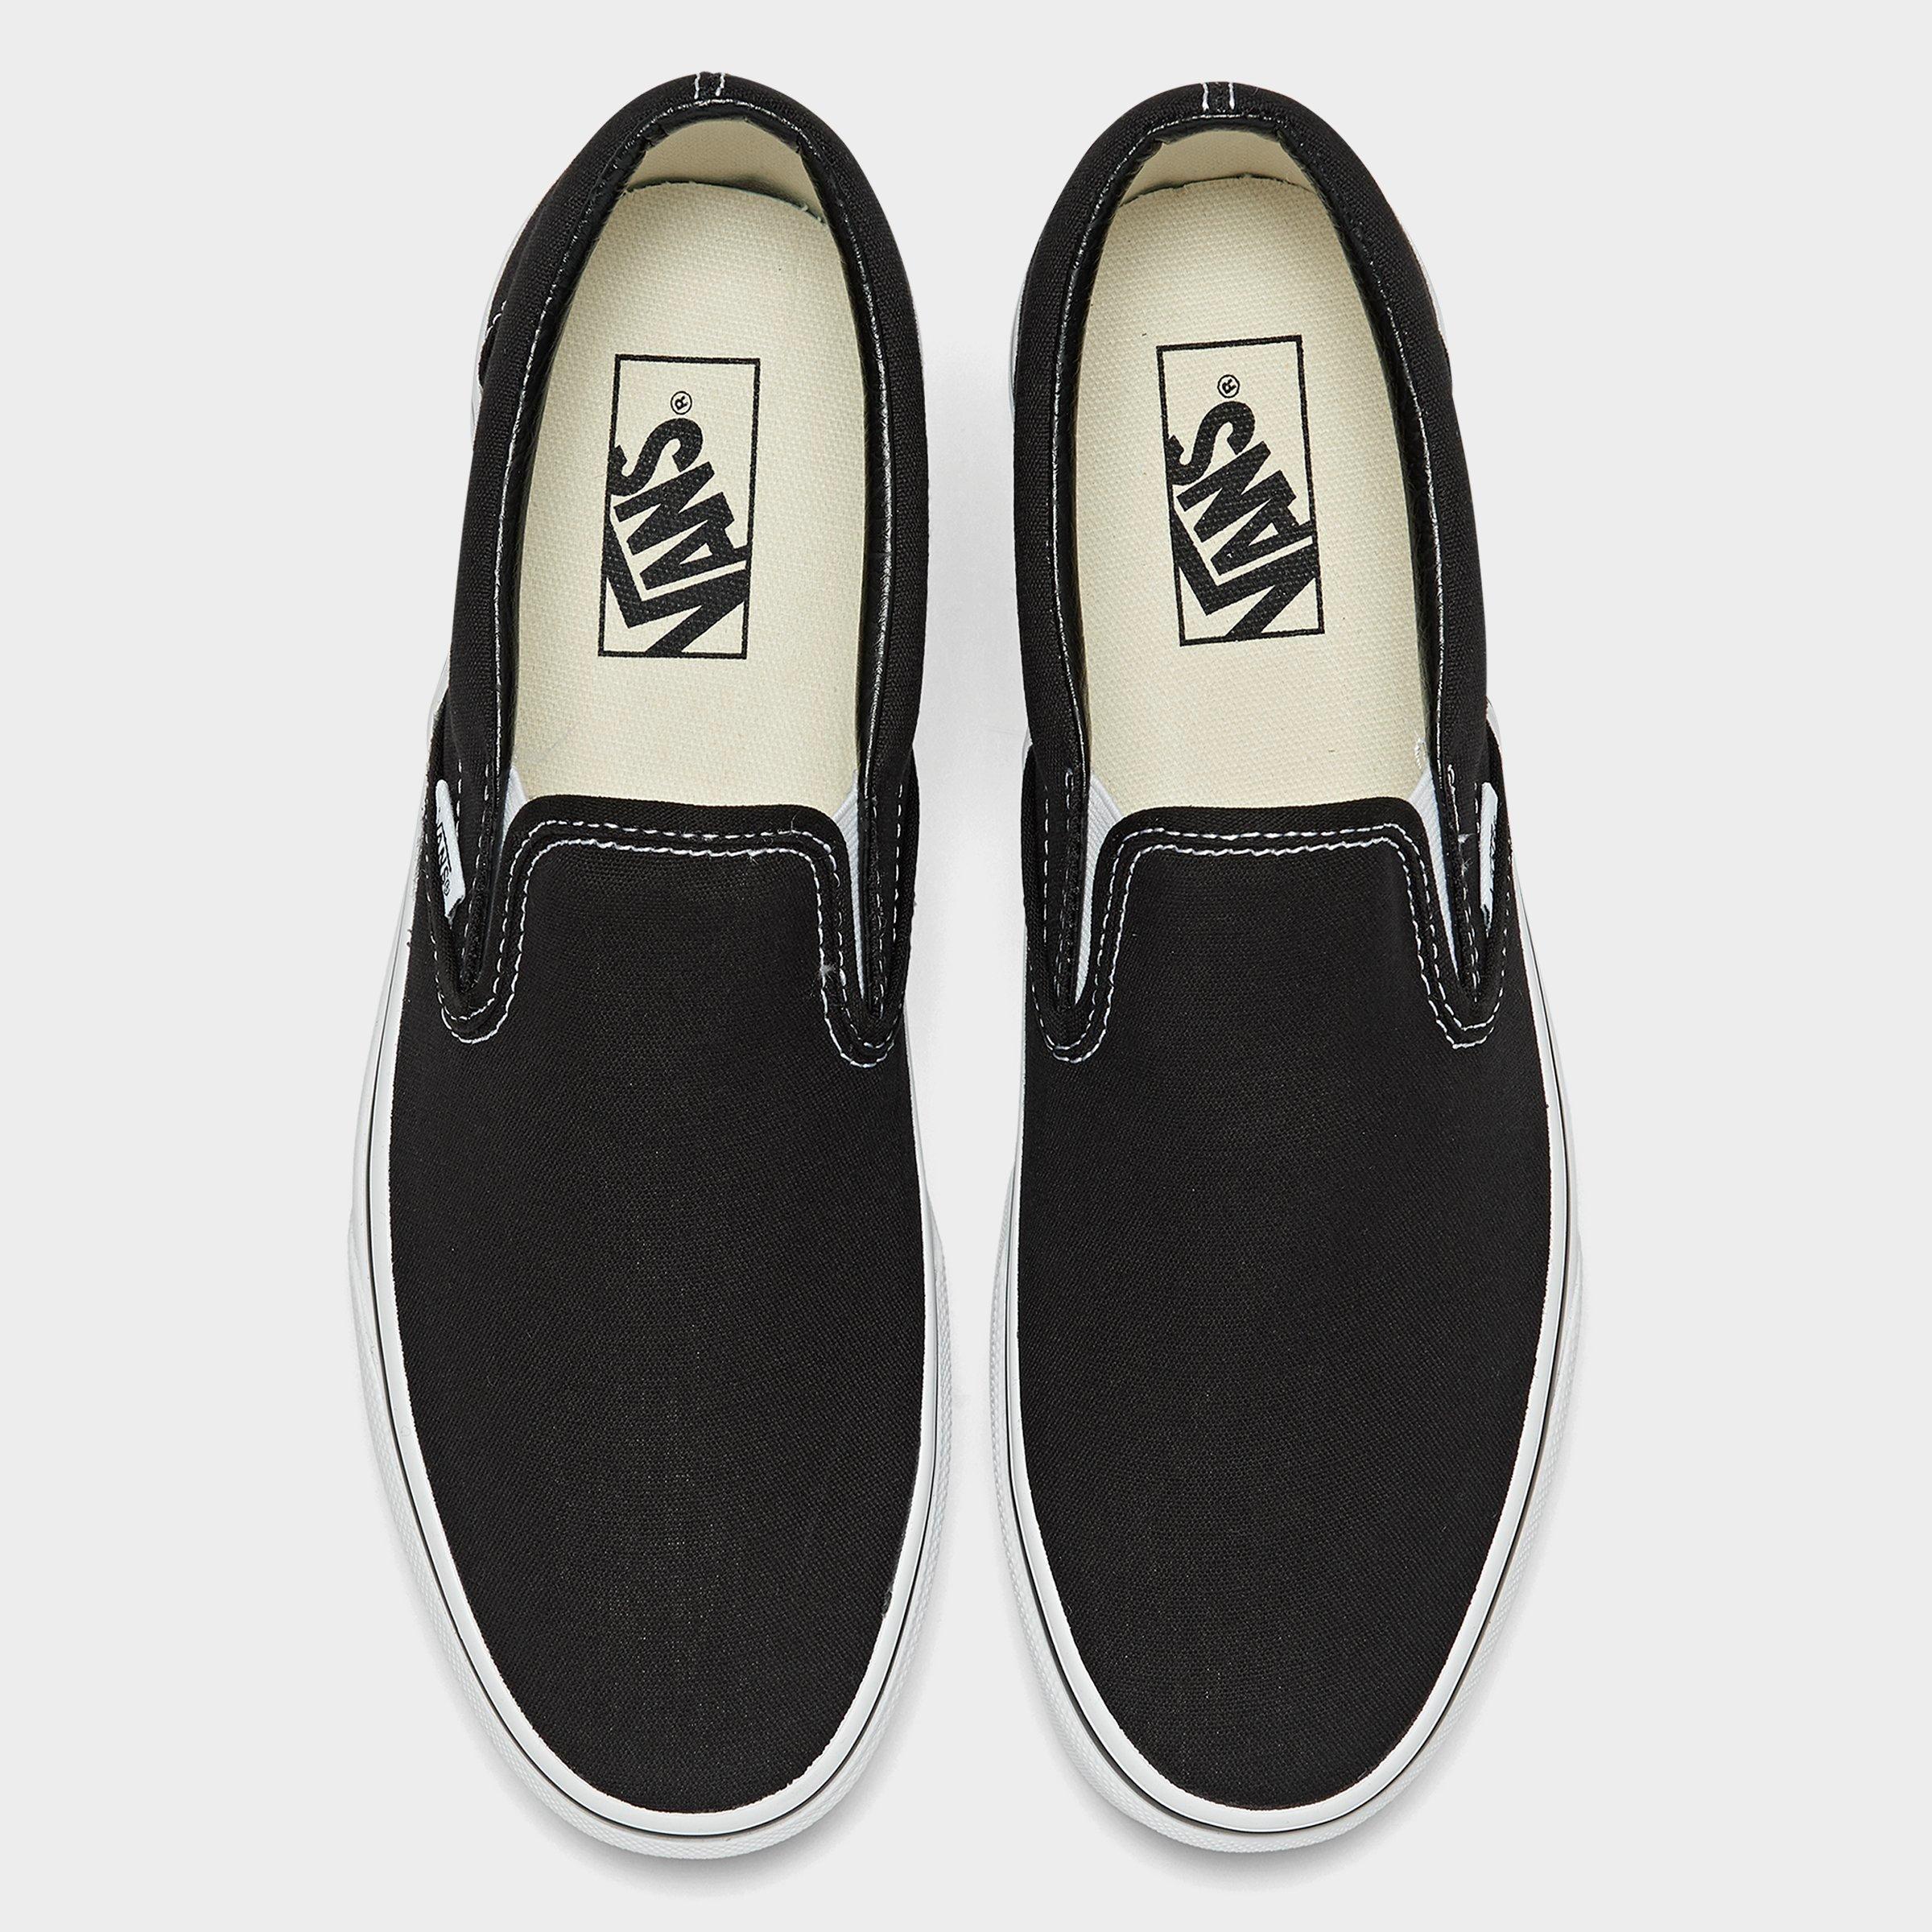 vans black casual shoes